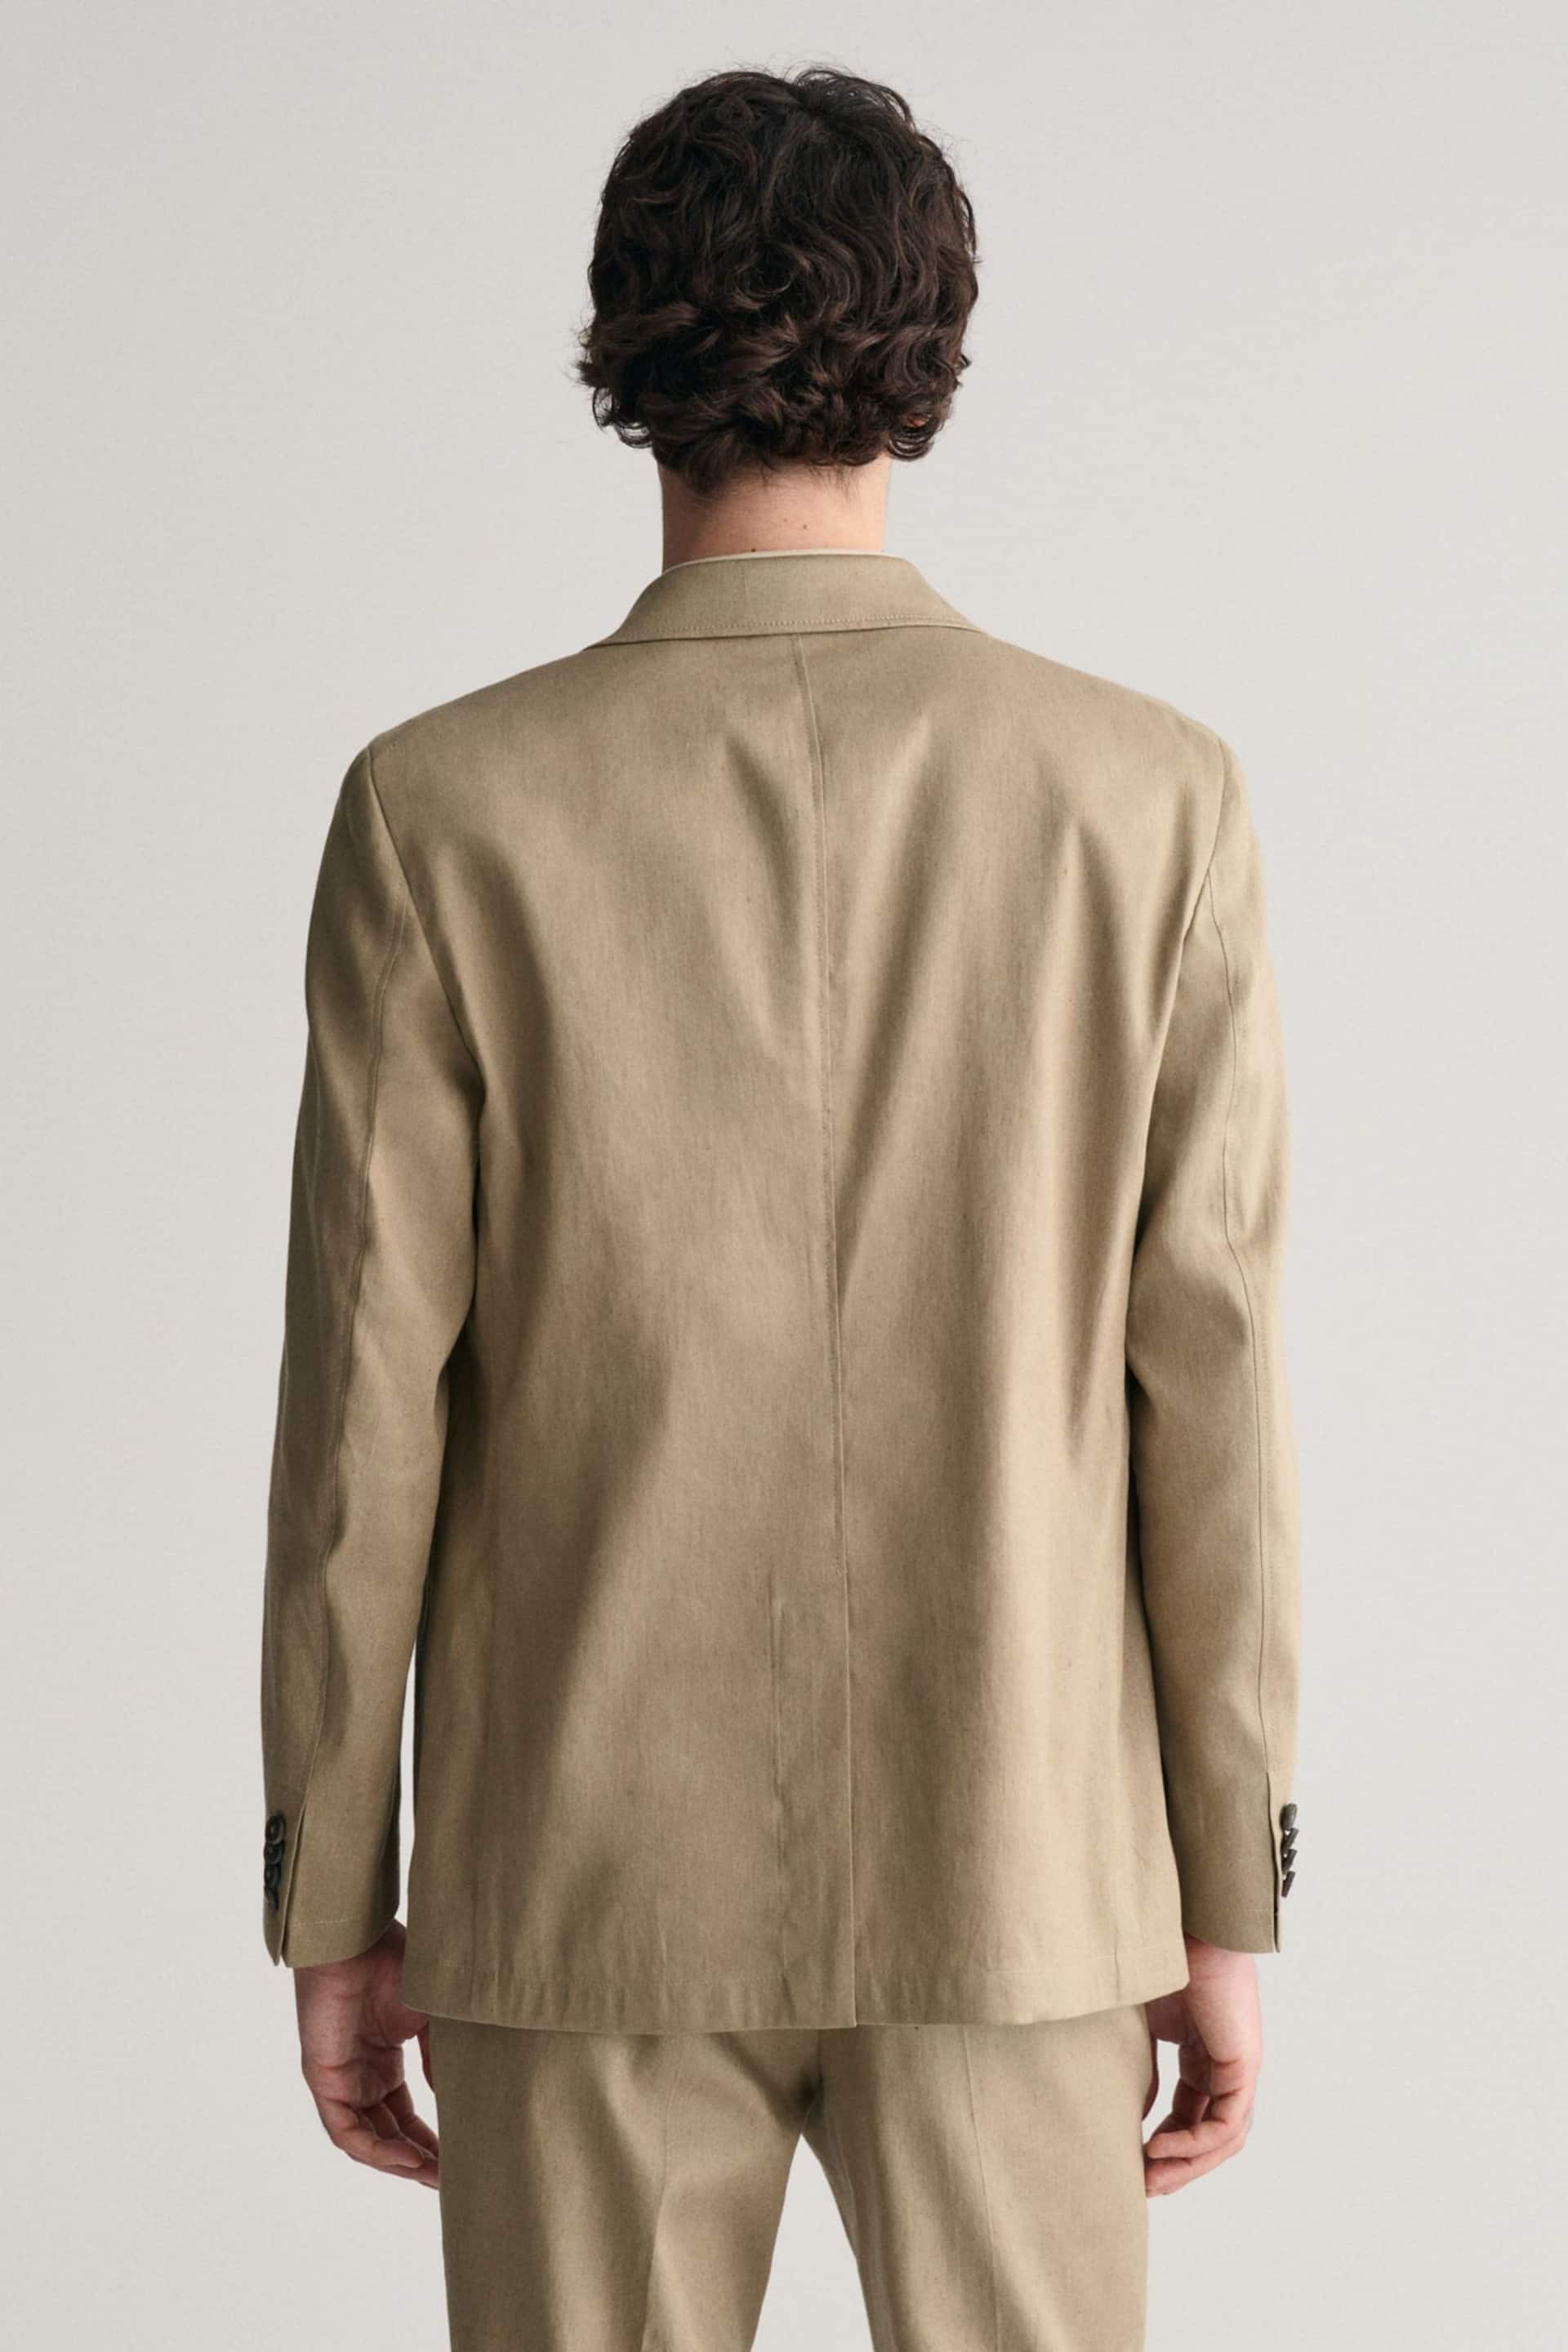 GANT Brown Slim Fit Cotton Linen Blazer - Image 2 of 6